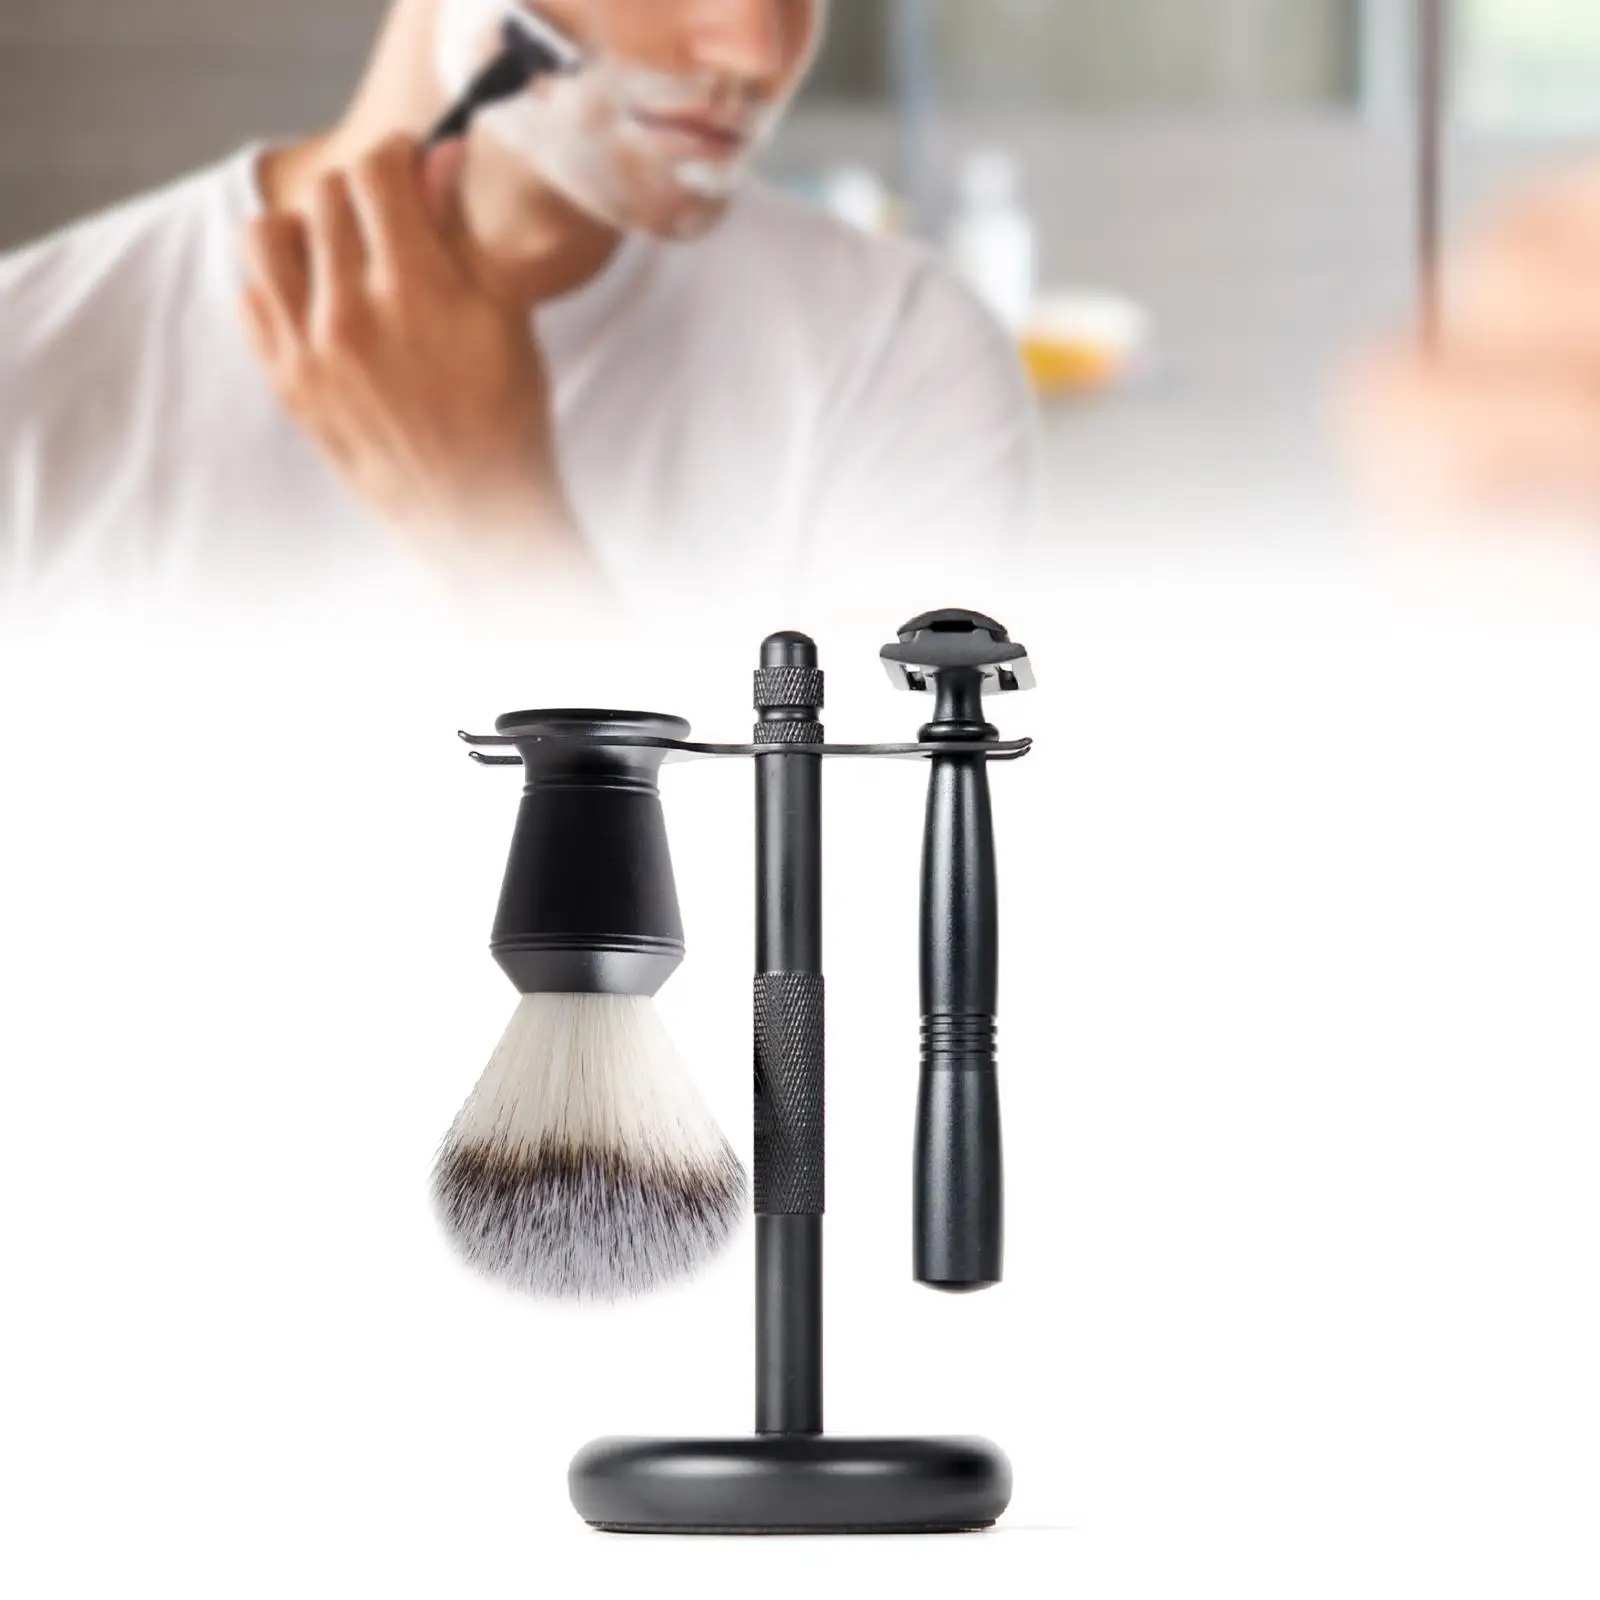 3x Shaving Set Black Color Shaving Brush Holder Stand Shaving Brush Set Includes Edge Razor, Holder, Shaving Brush Gift Set